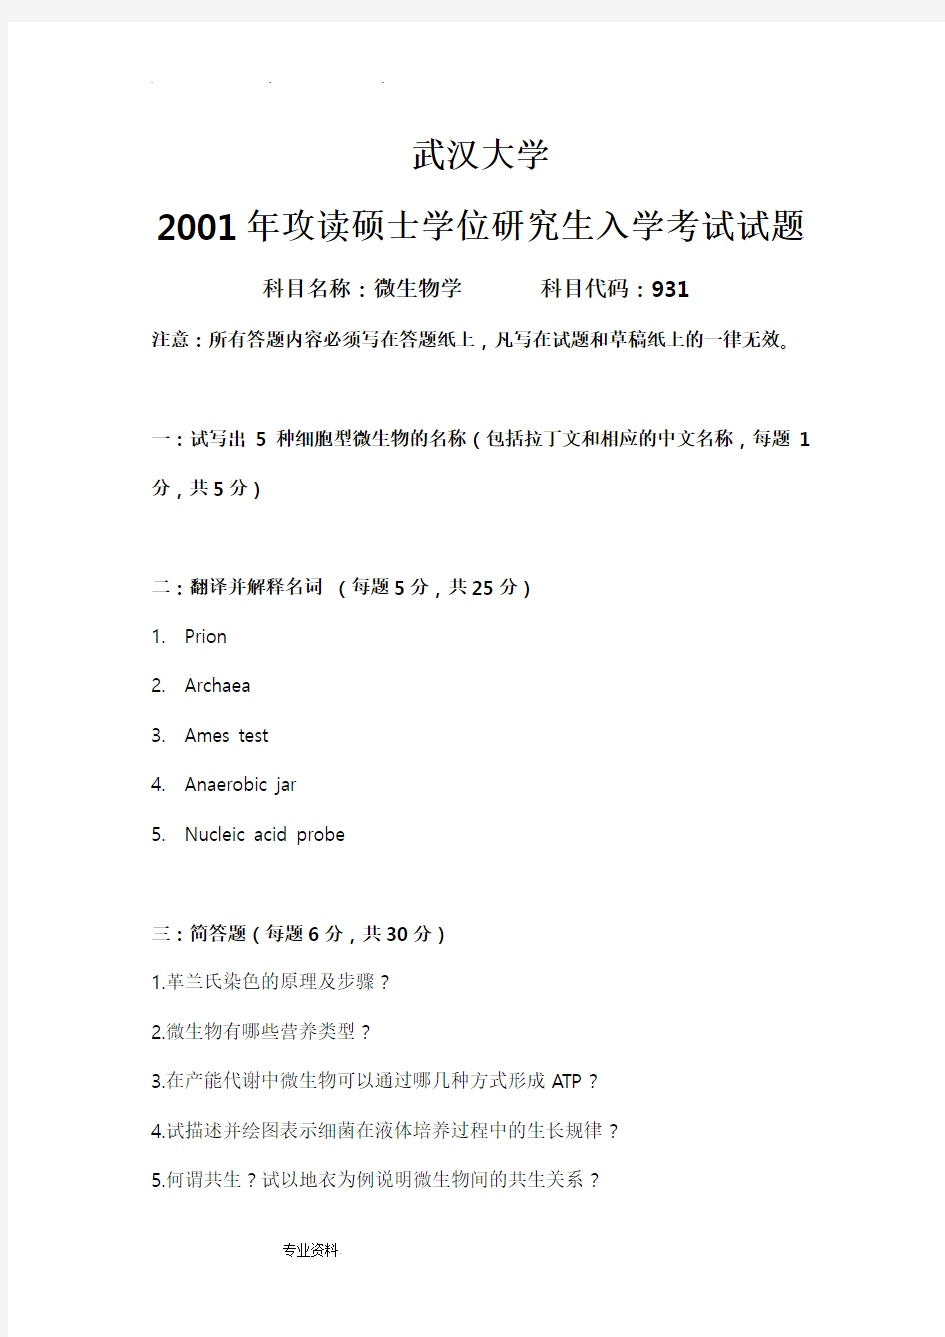 武汉大学微生物考研历年真题汇总2001_2004、2010_2015